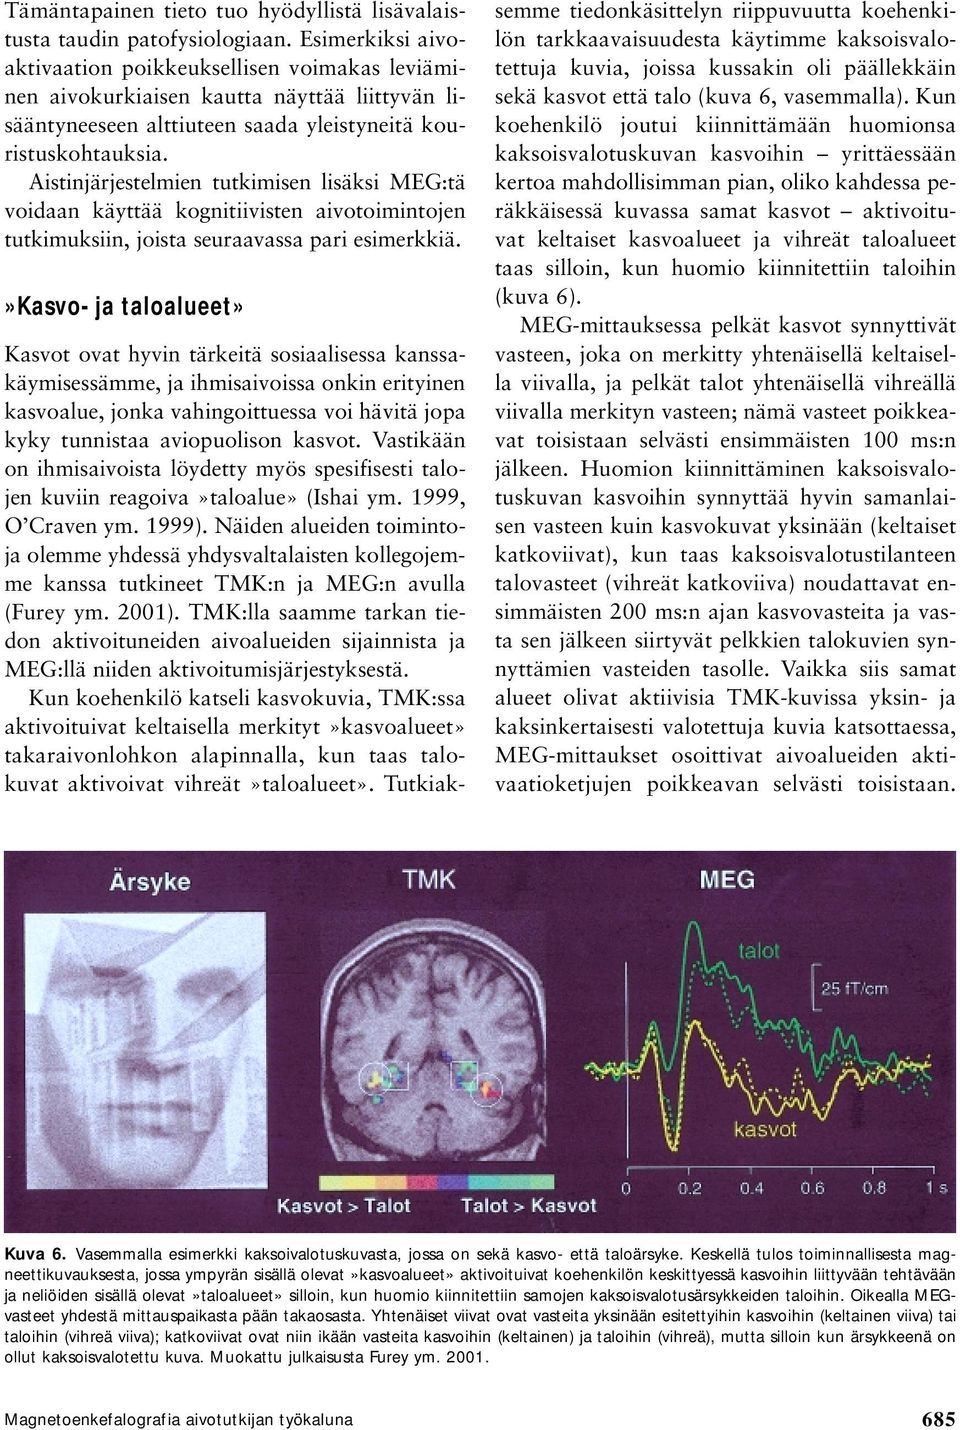 Aistinjärjestelmien tutkimisen lisäksi MEG:tä voidaan käyttää kognitiivisten aivotoimintojen tutkimuksiin, joista seuraavassa pari esimerkkiä.